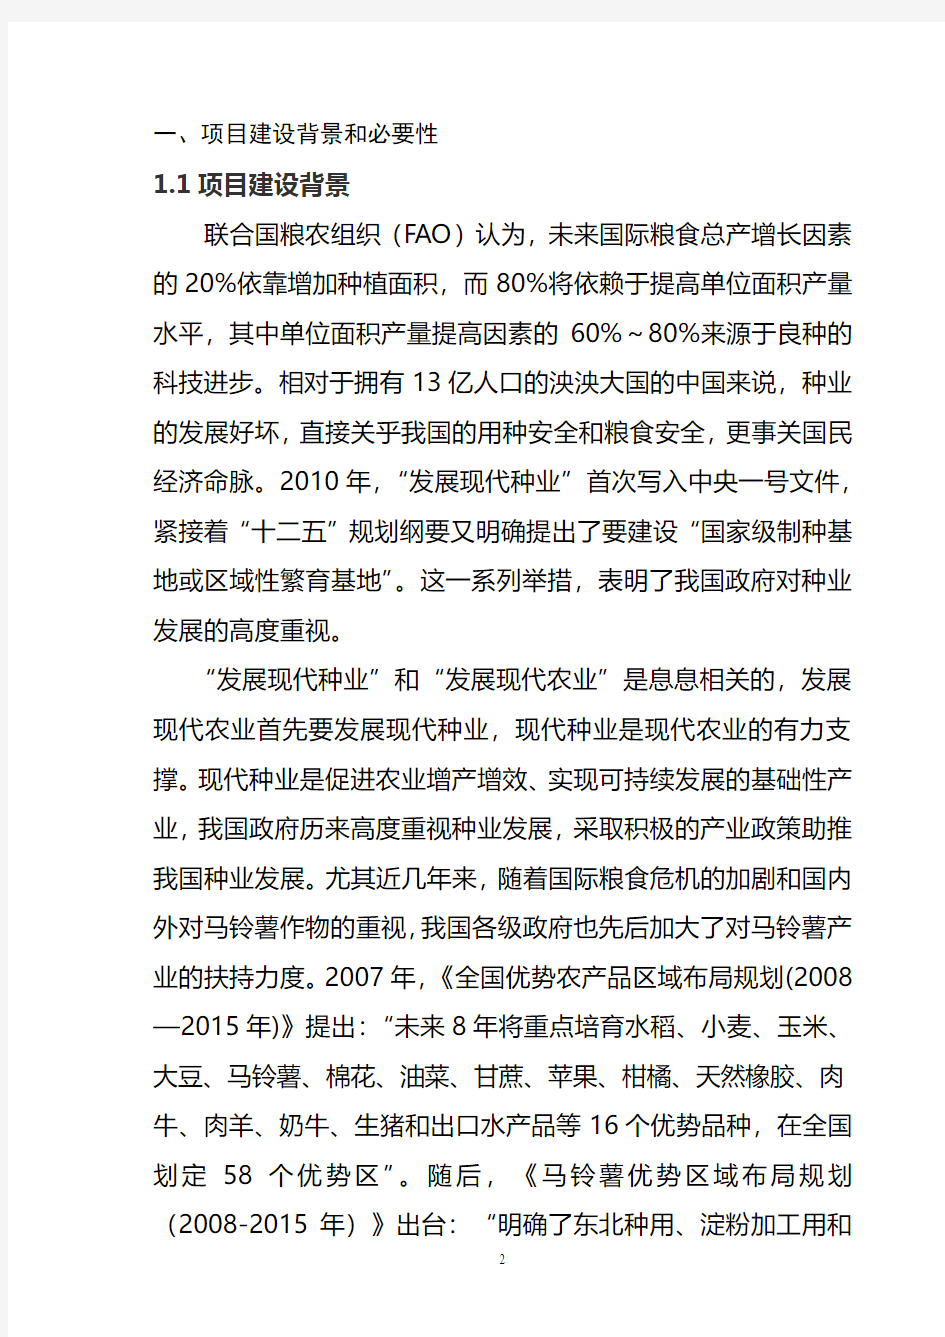 黑龙江省龙科种业集团有限公司脱毒马铃薯良种